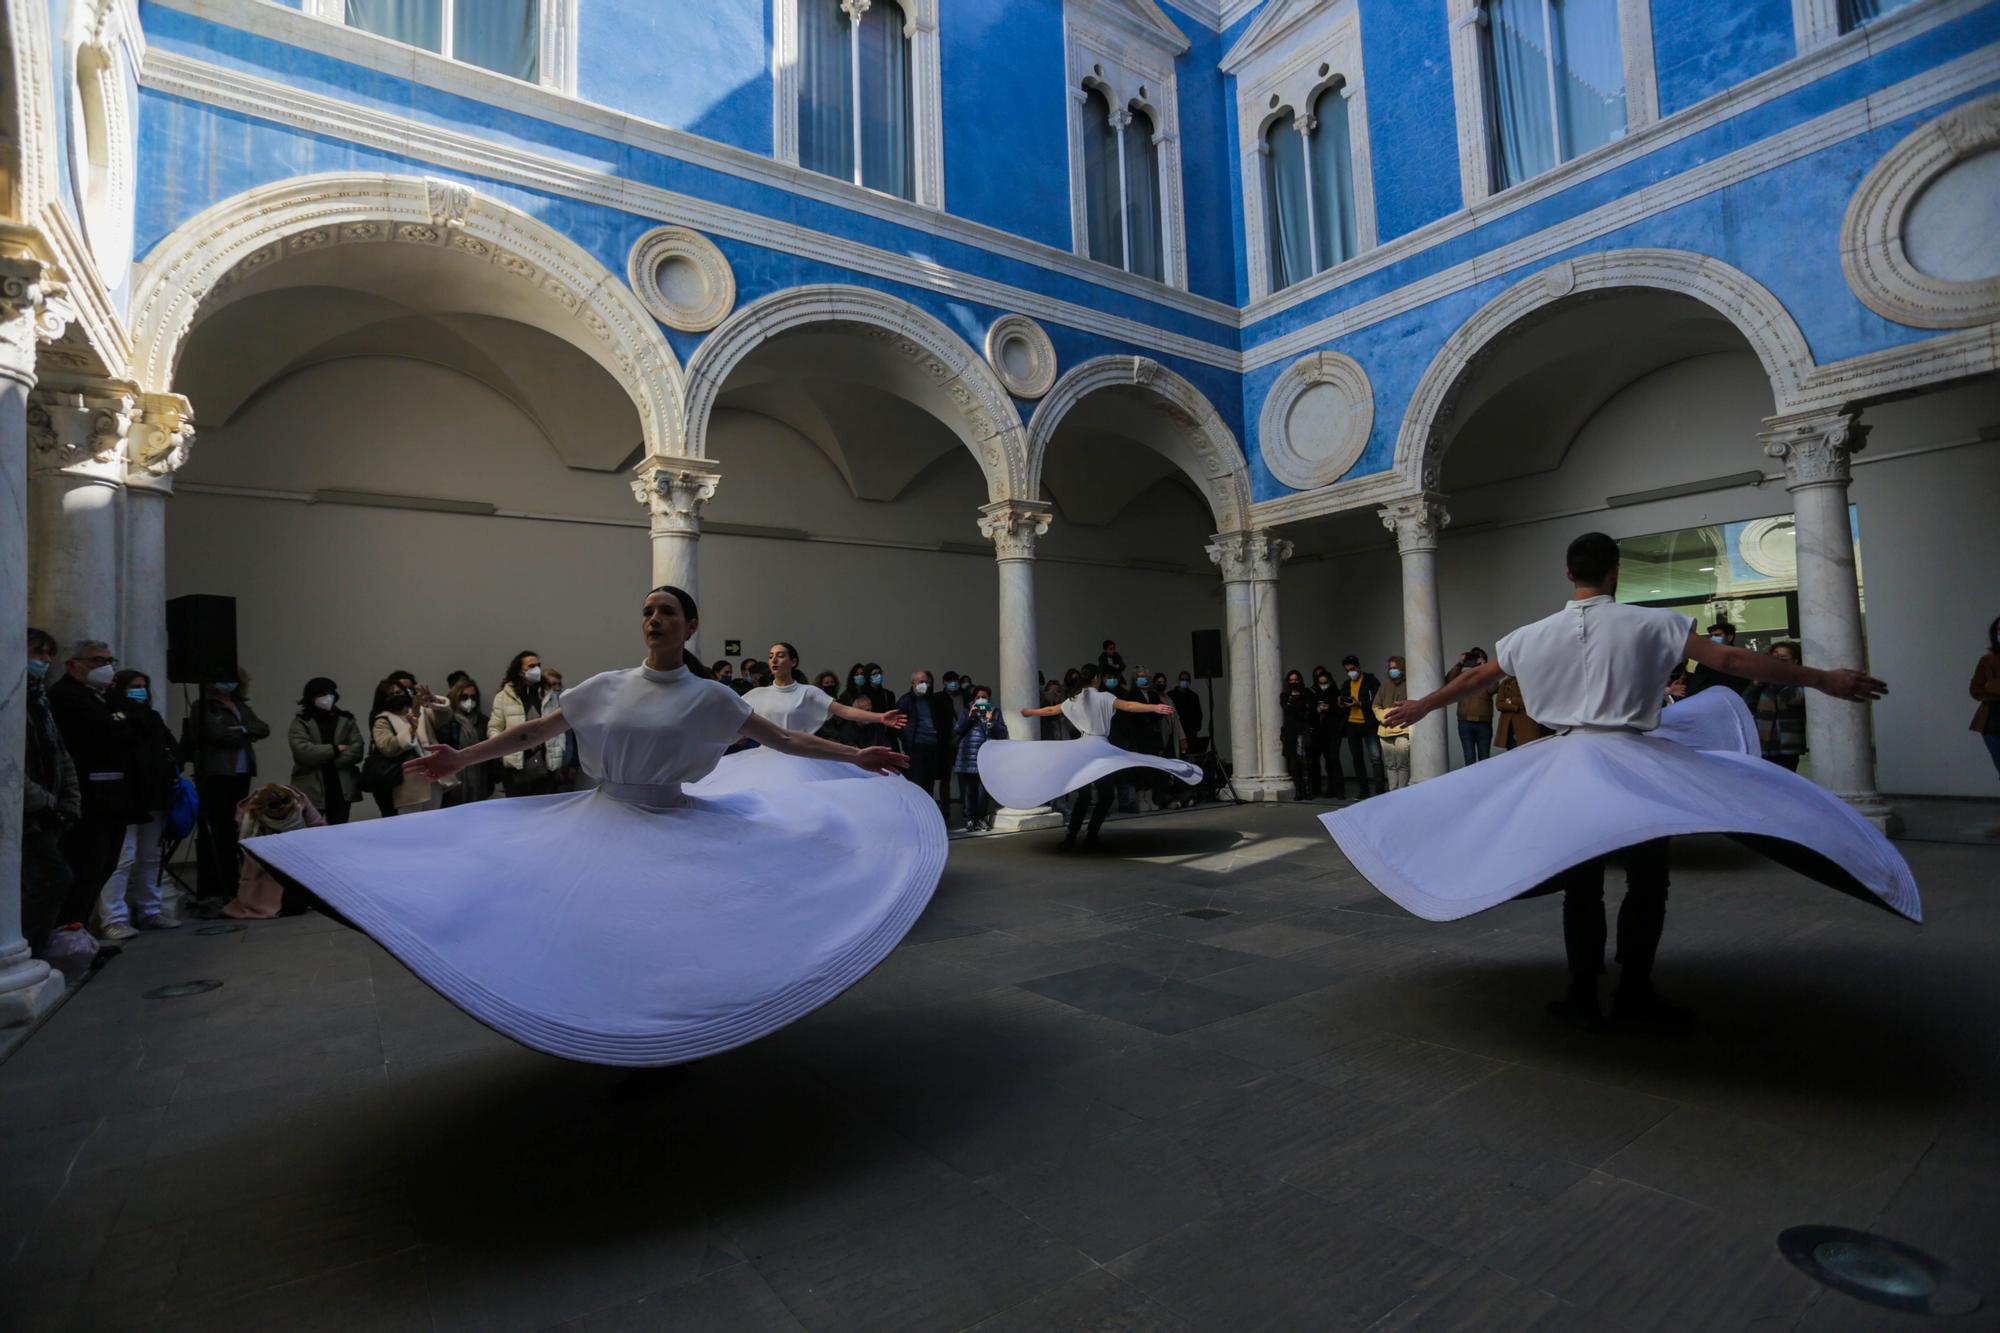 La Dansa València llega al Museo de Bellas Artes